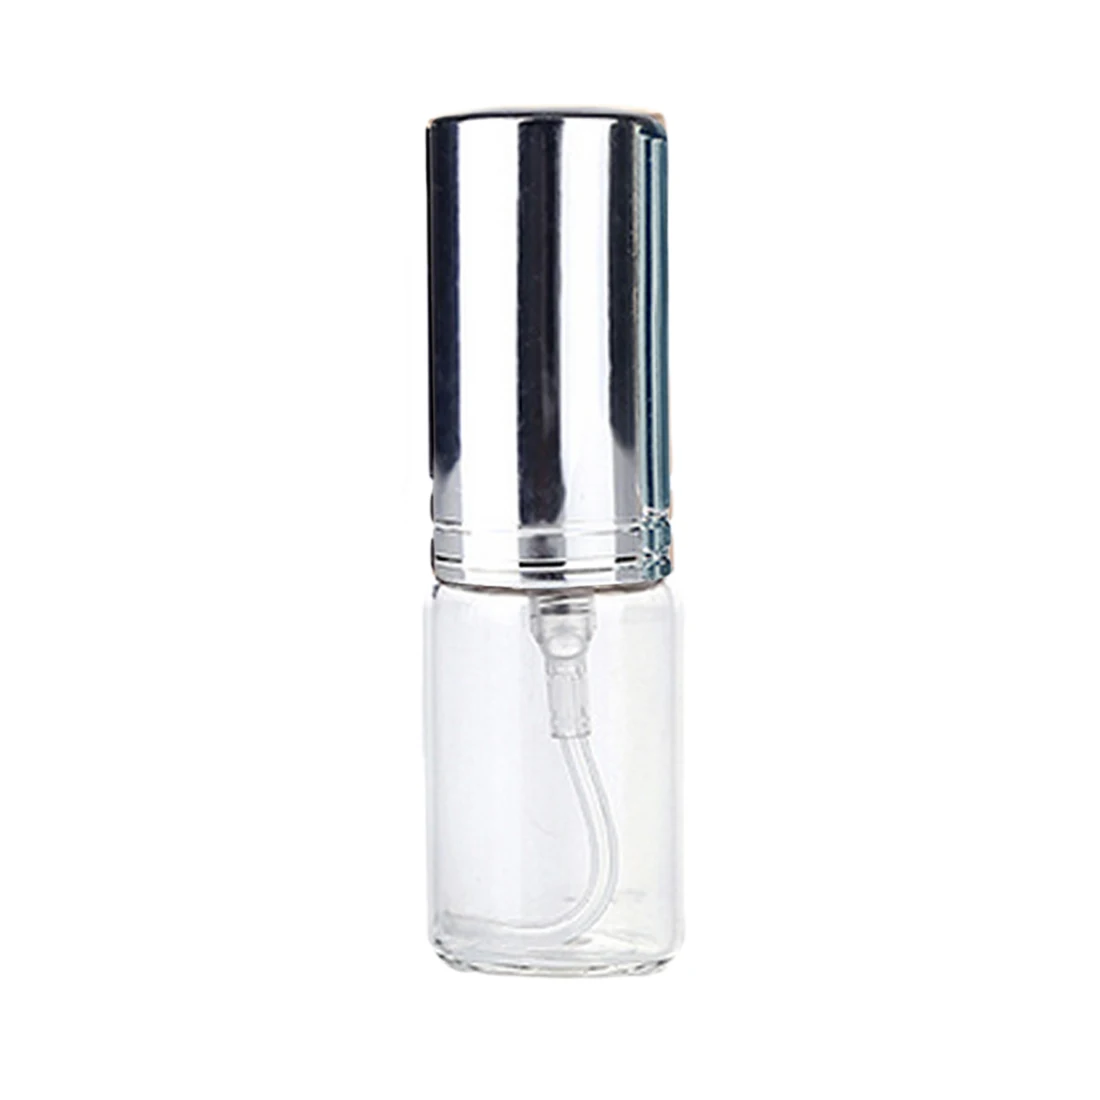 5 мл косметический образец парфюма маленький образец Дозирующий Алюминиевый распылитель мини ультра-тонкий противотуманный стеклянный прессованный флакон - Цвет: Bright silver